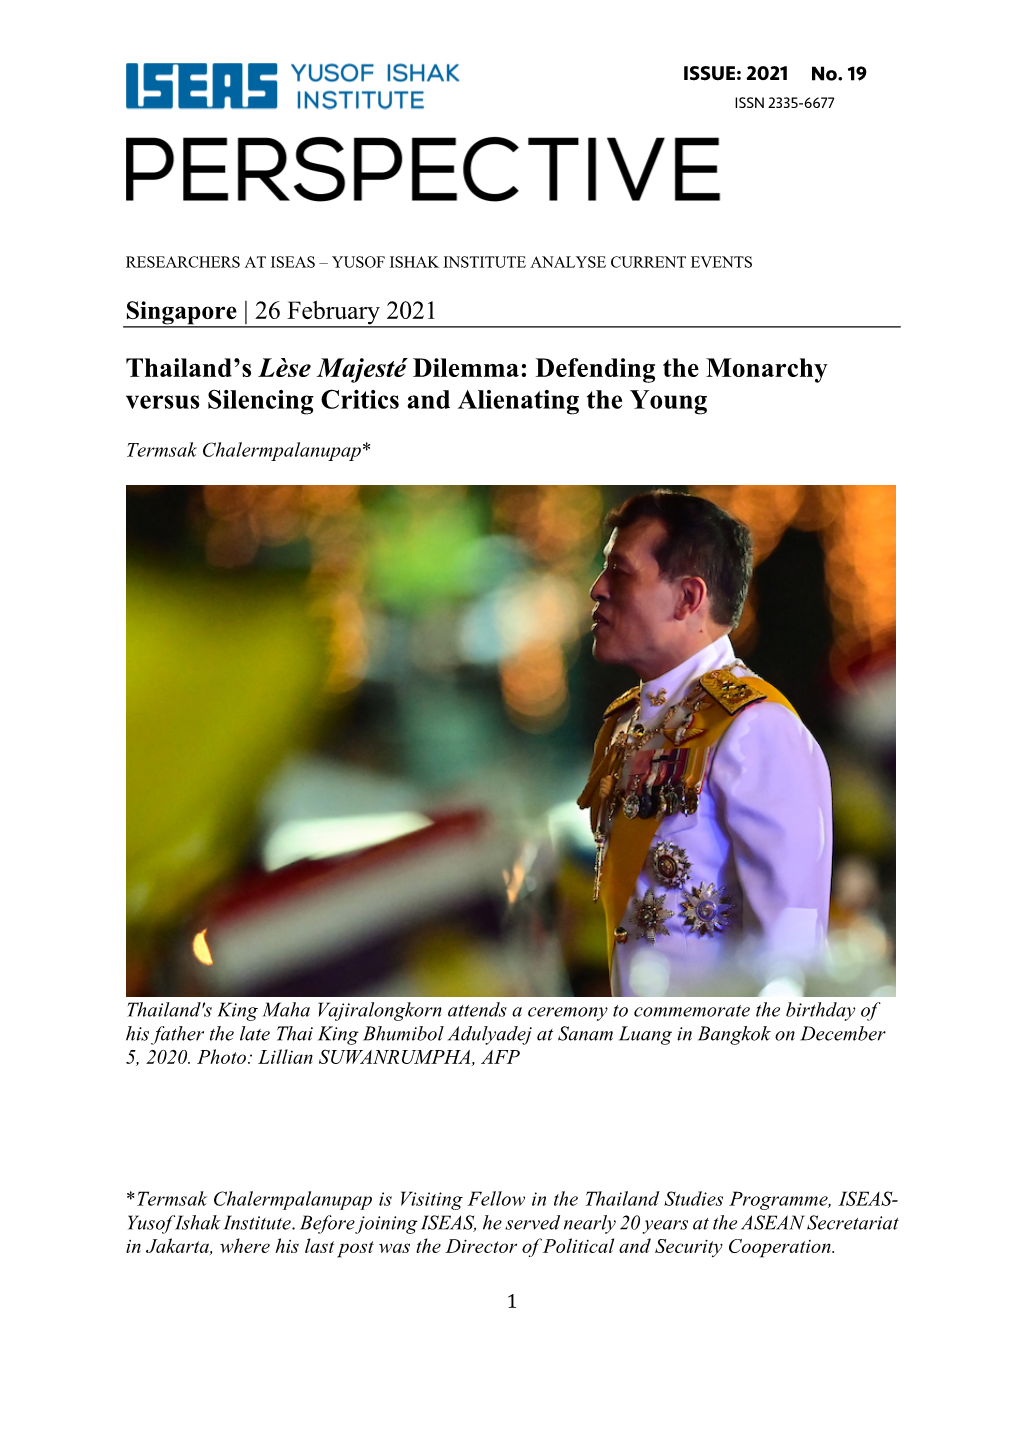 Thailand's Lèse Majesté Dilemma: Defending the Monarchy Versus